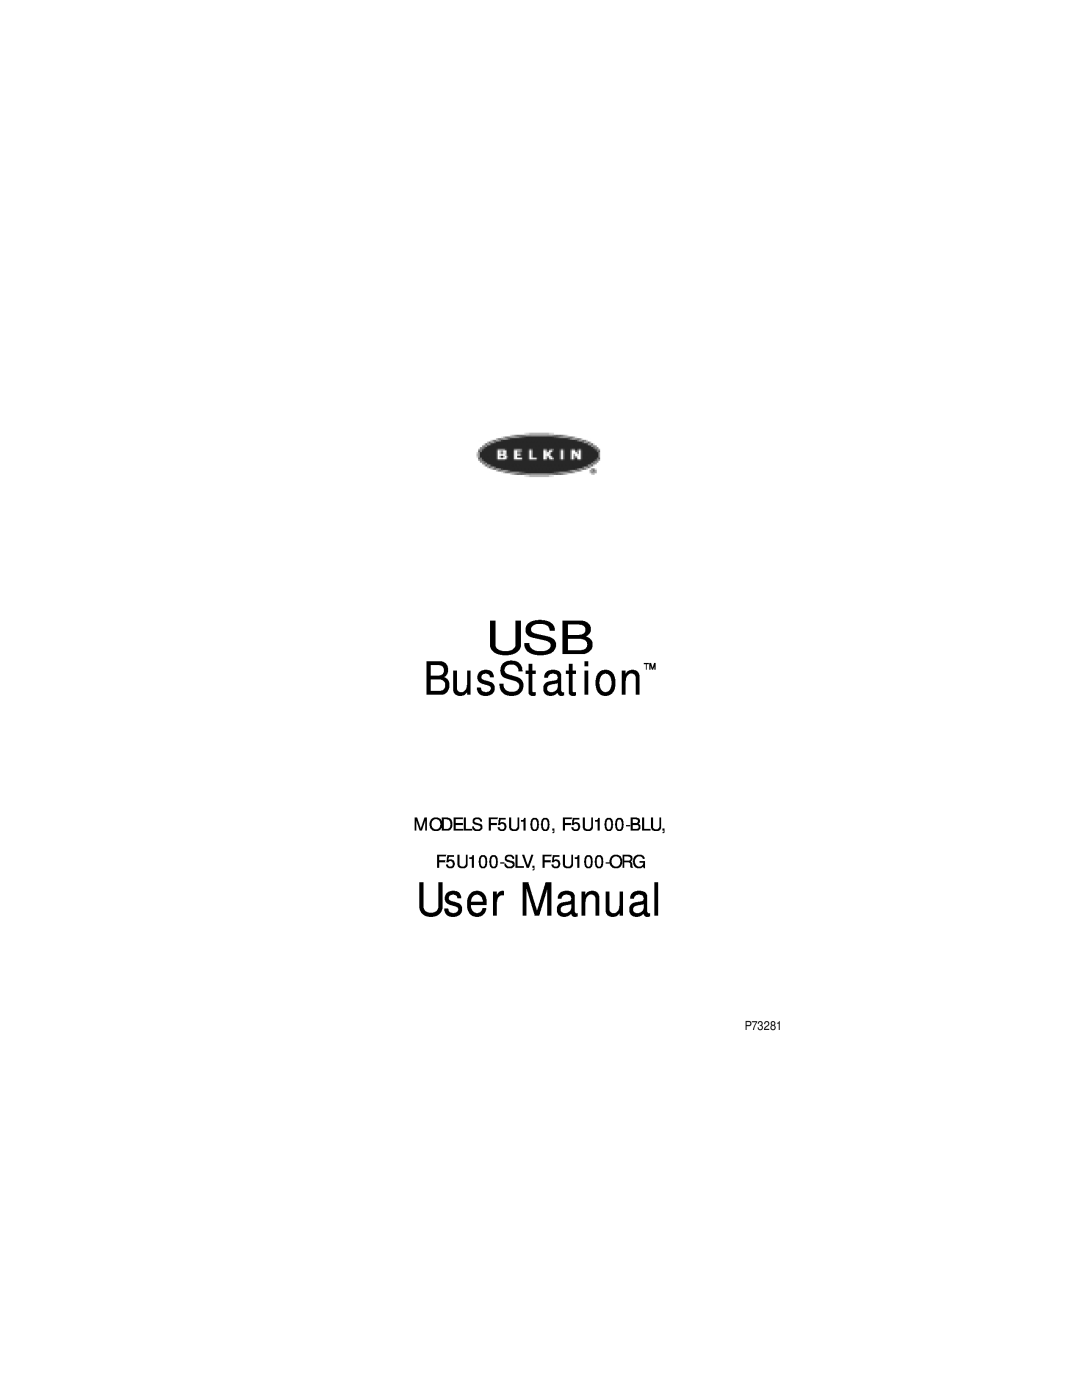 Belkin user manual USB BusStation, MODELS F5U100, F5U100-BLU F5U100-SLV, F5U100-ORG 